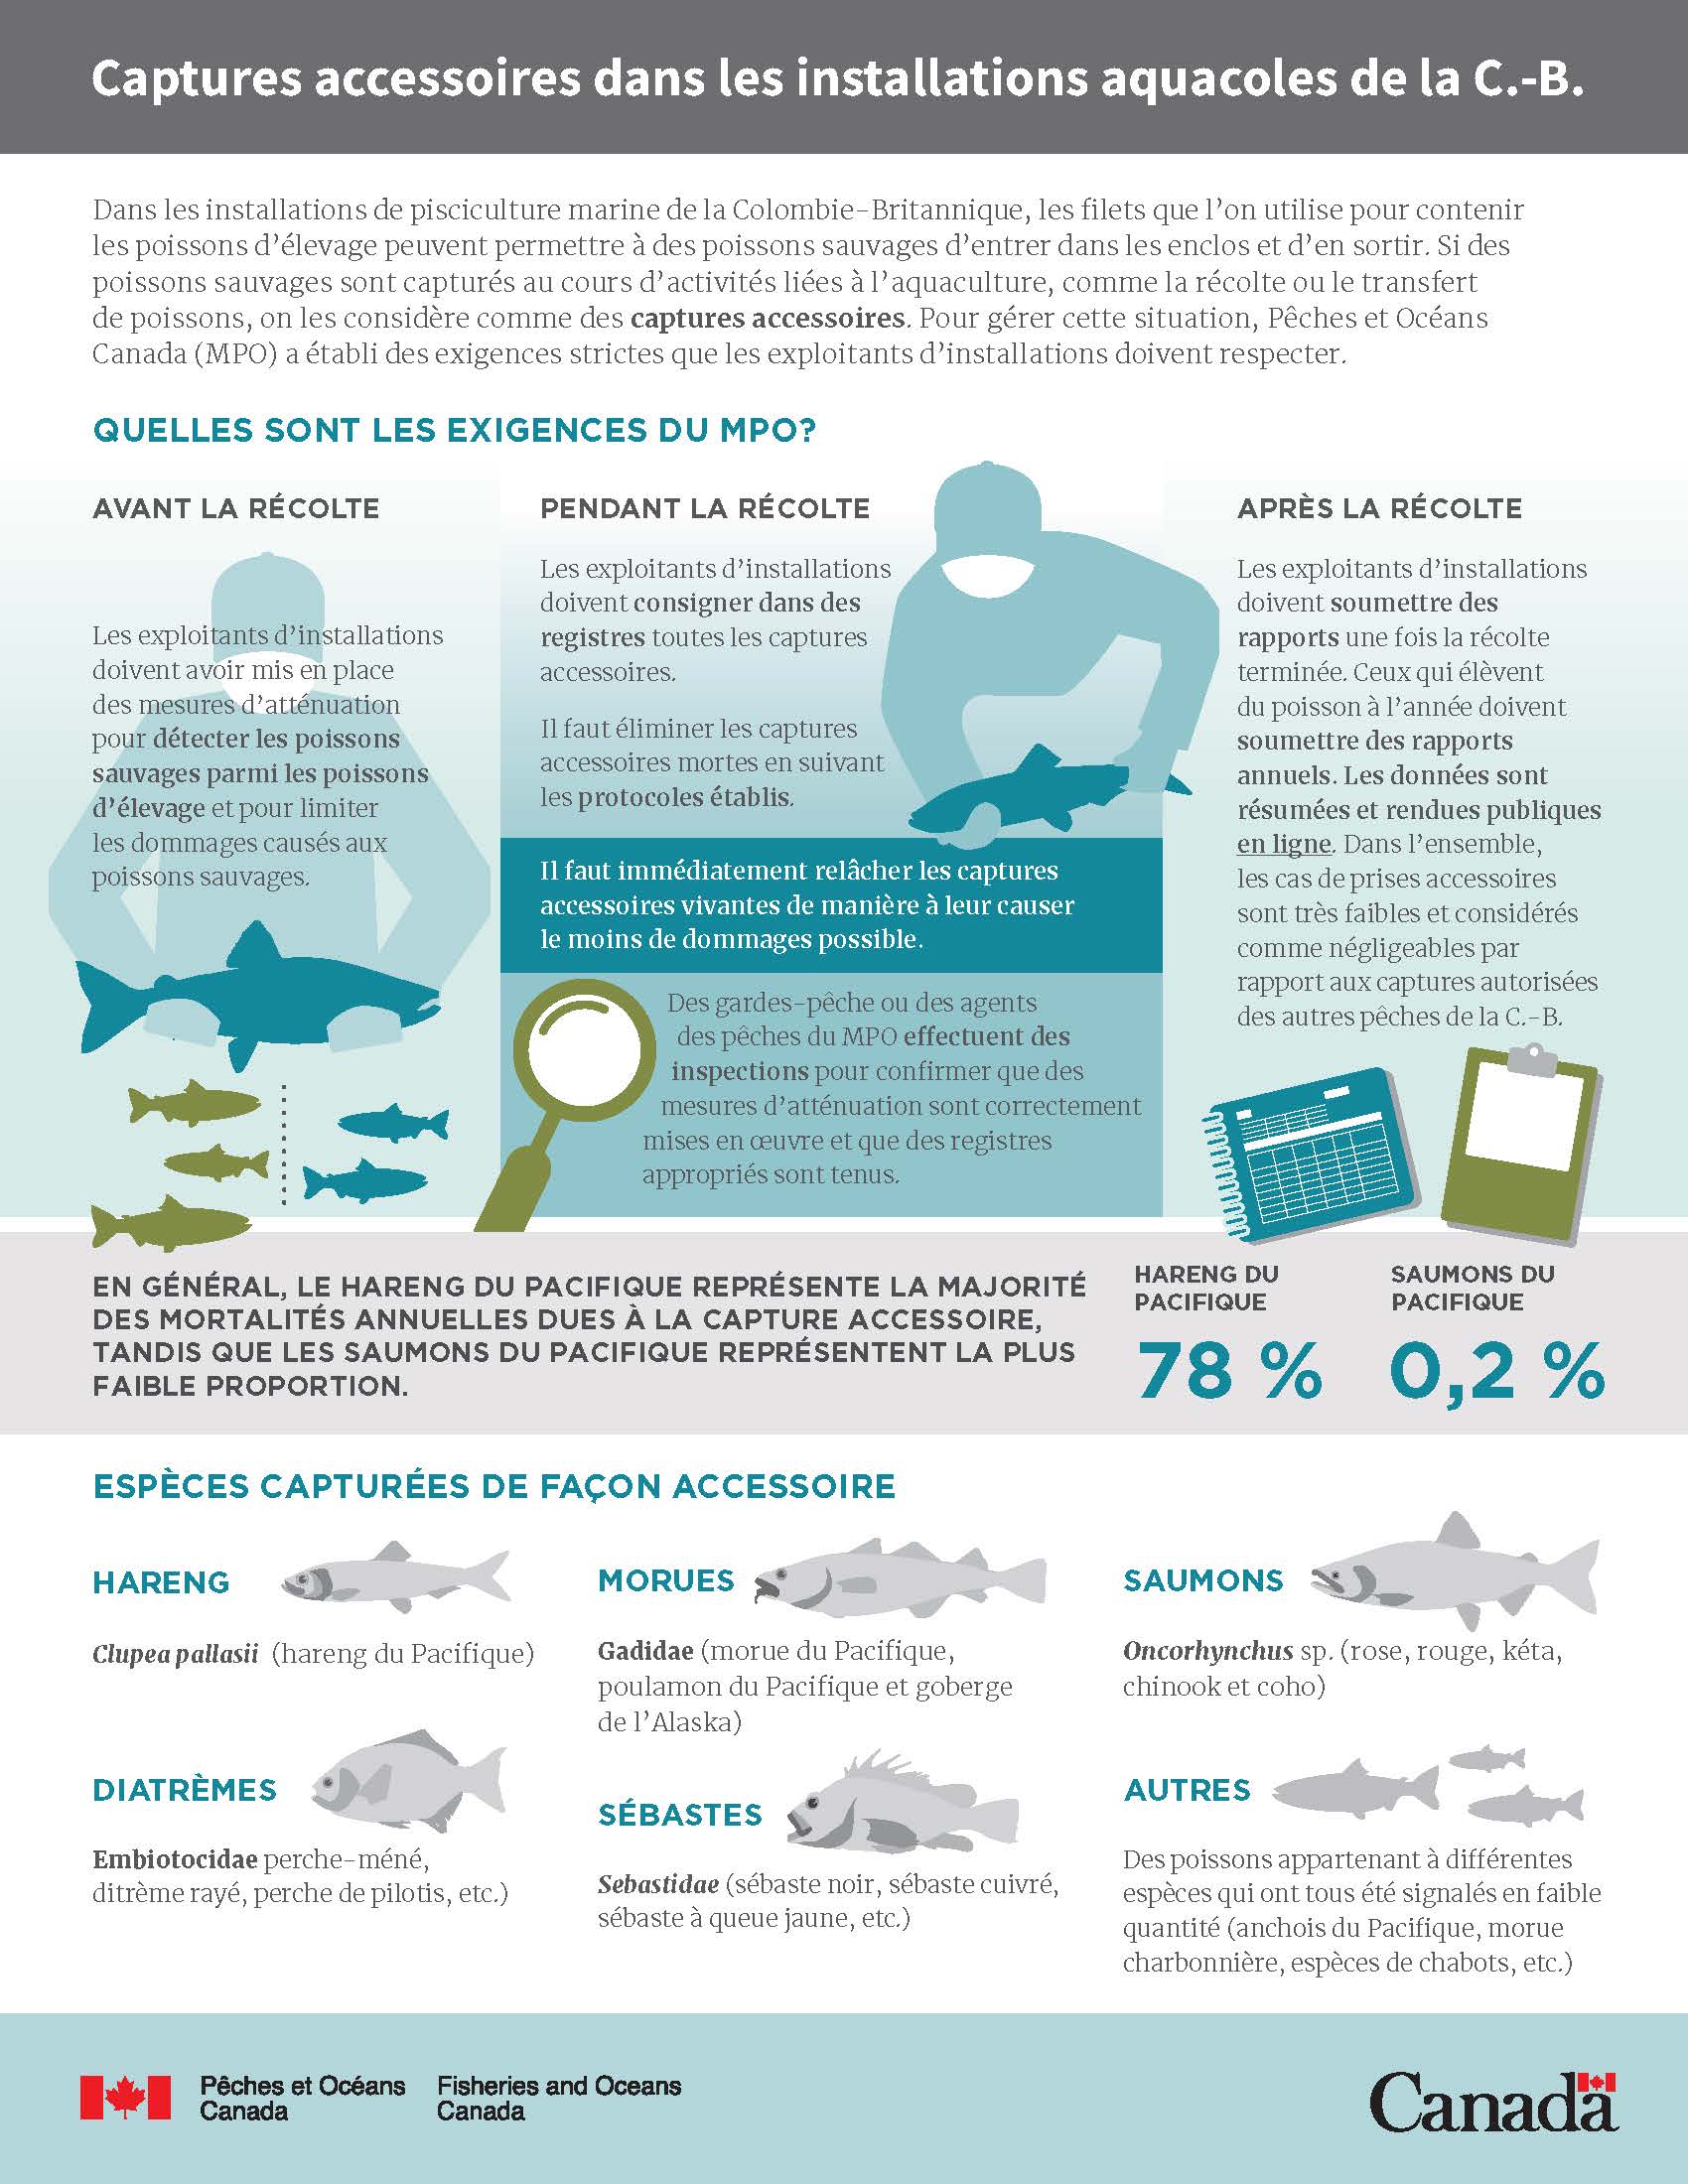 Infographie : Captures accessoires dans les installations aquacoles de la C.-B.